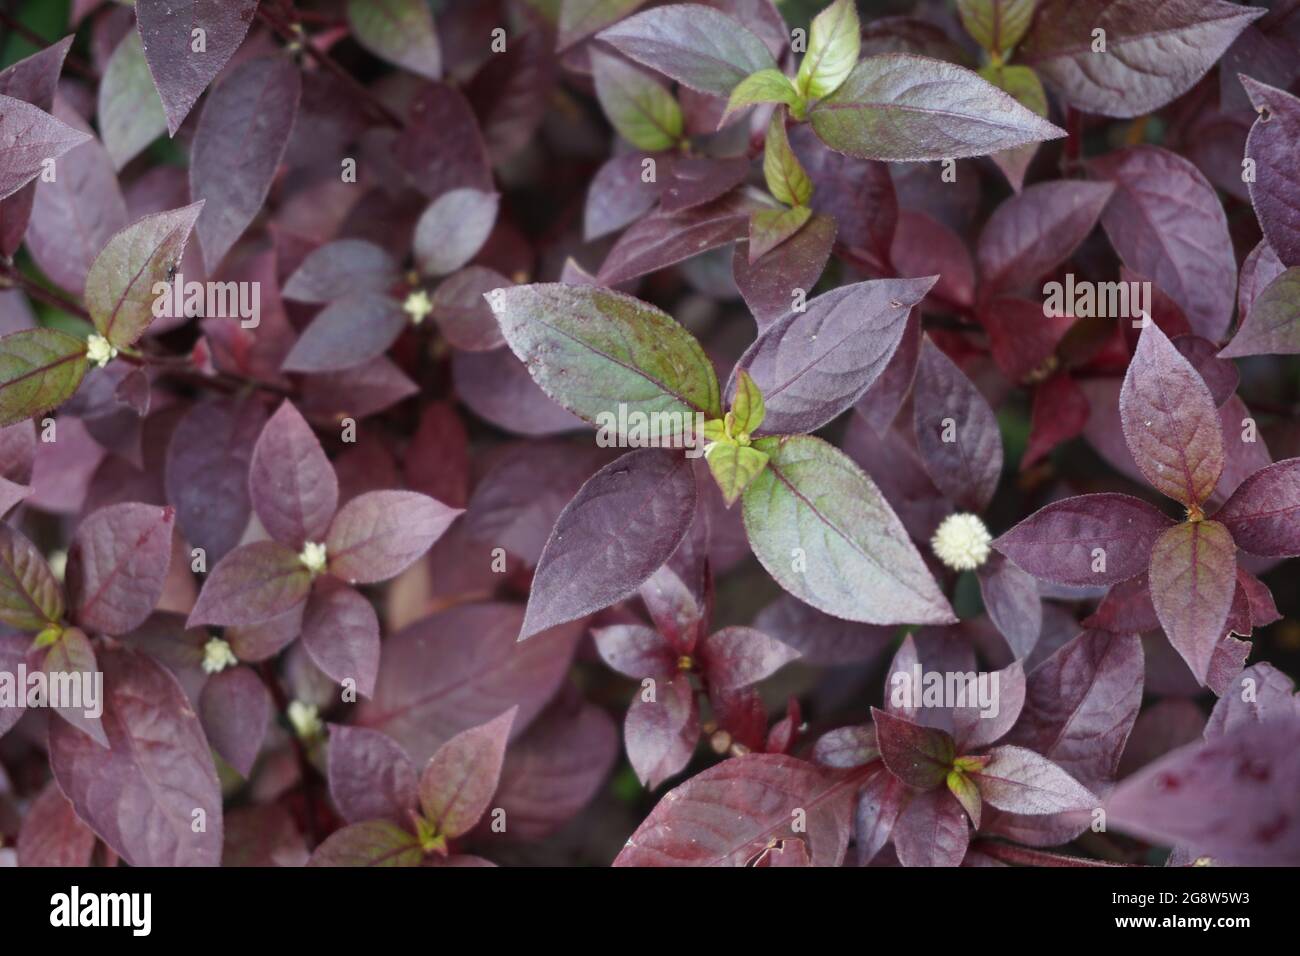 Red Aerva Sanguinolenta flower with a natural background Stock Photo